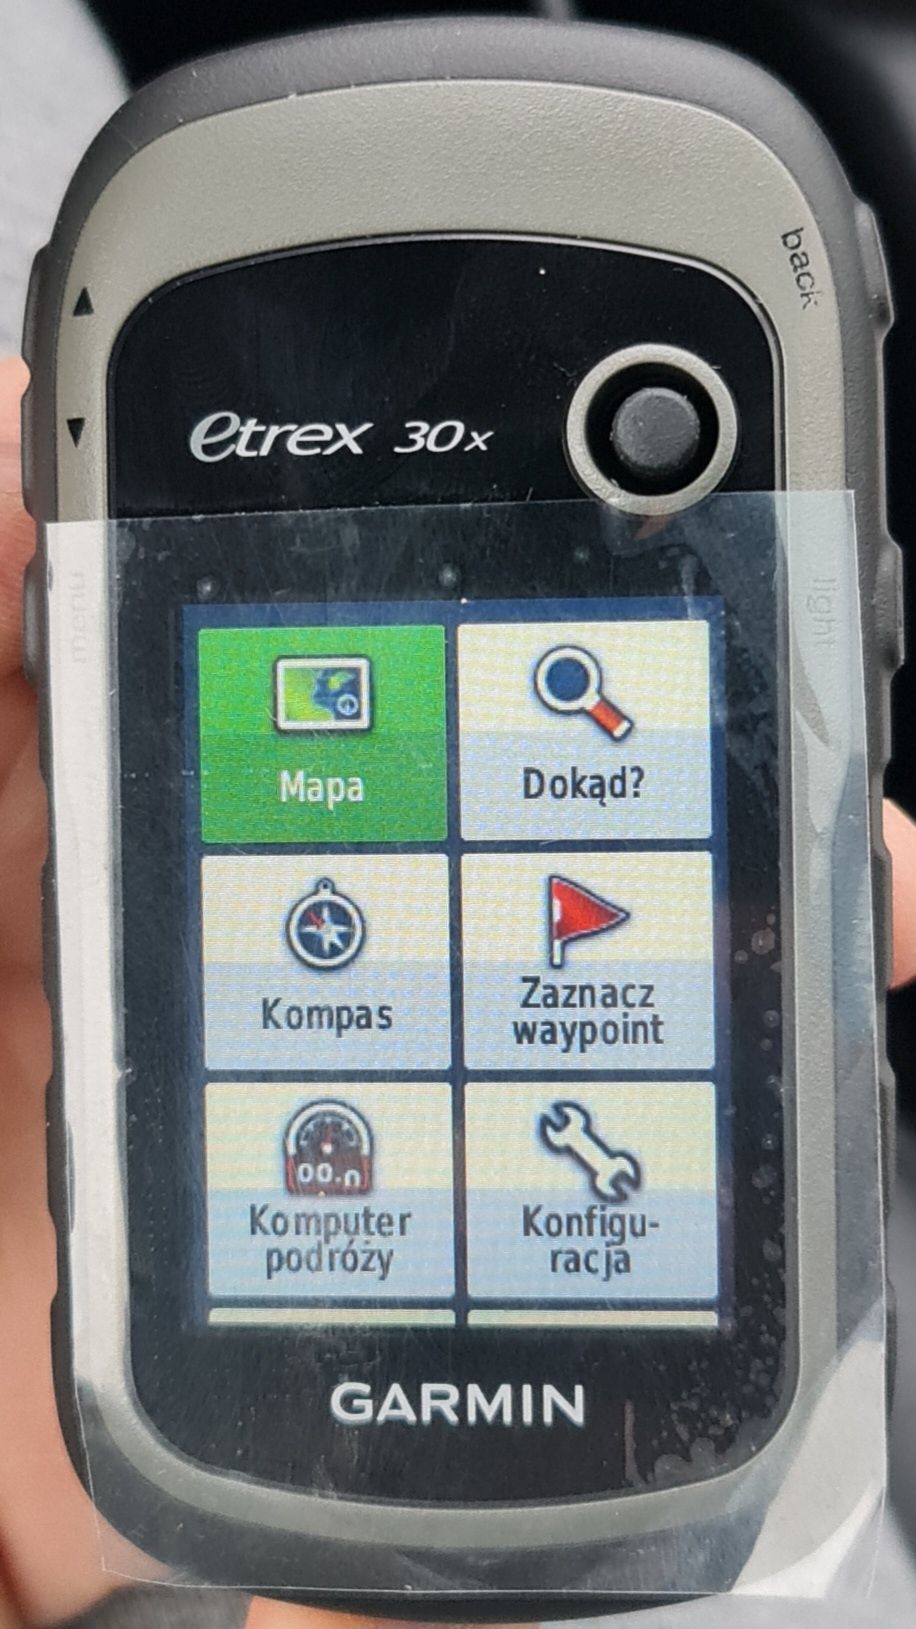 Nawigacja GPS Garmin Etrex 30x